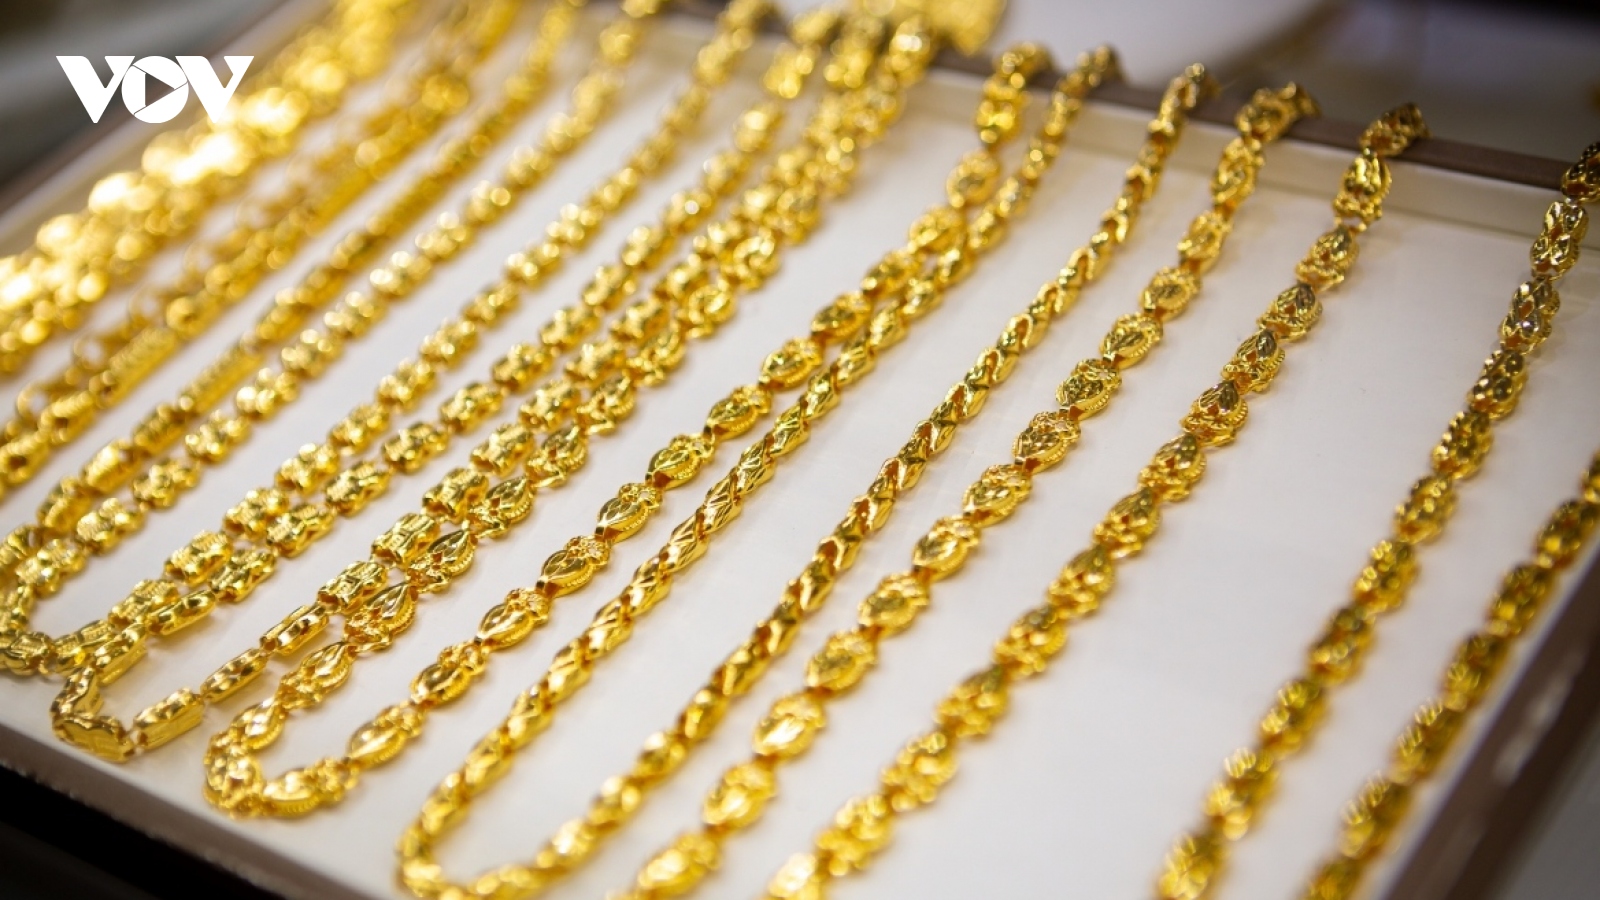 Giá vàng hôm nay 30/5: Vàng SJC đột ngột giảm 3 triệu đồng/lượng